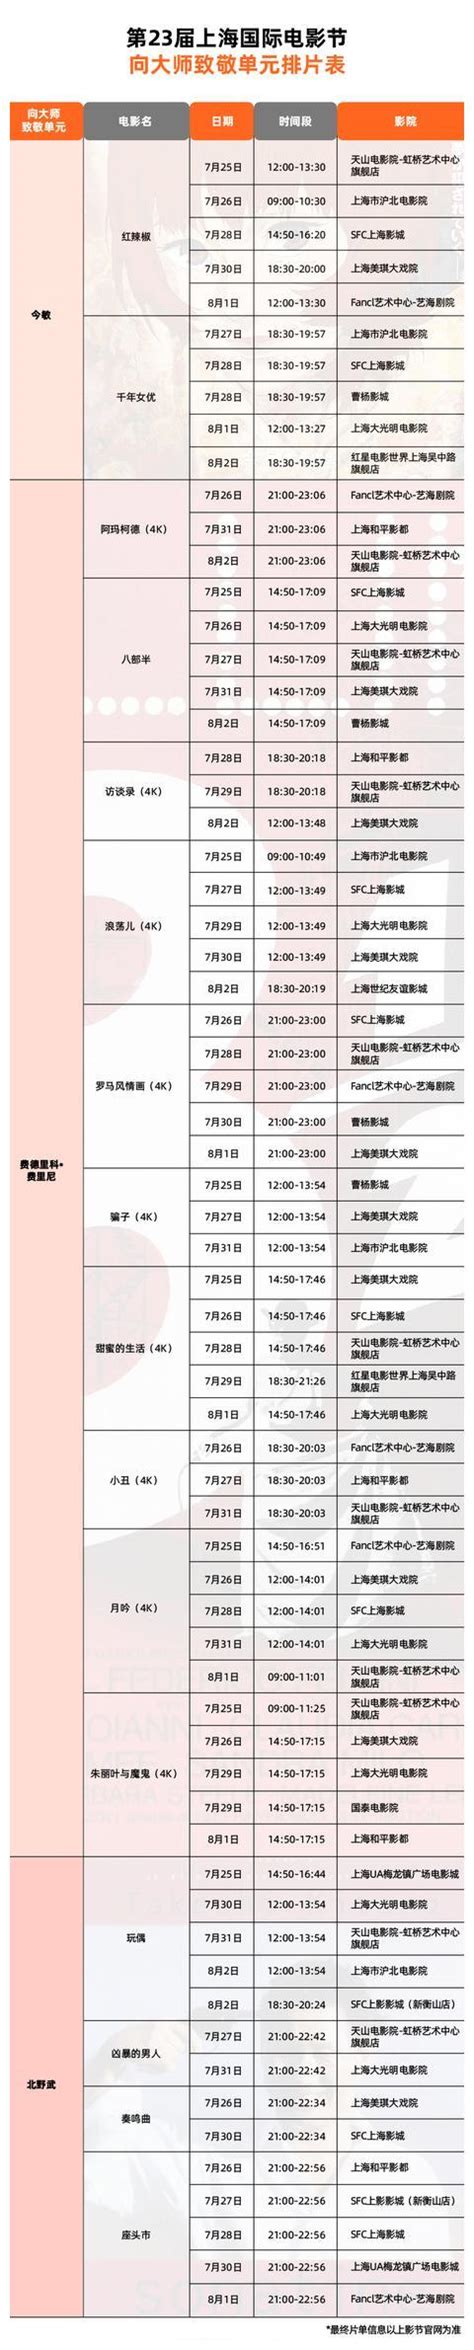 第23届上海国际电影节向大师致敬单元排片表__财经头条